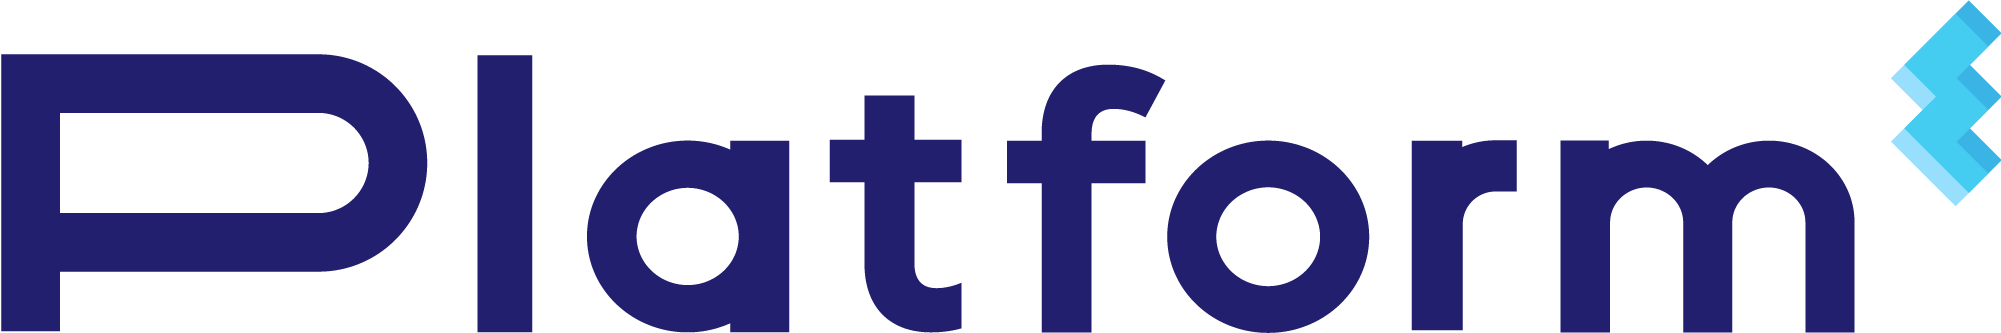 PlatformE_Logo_2